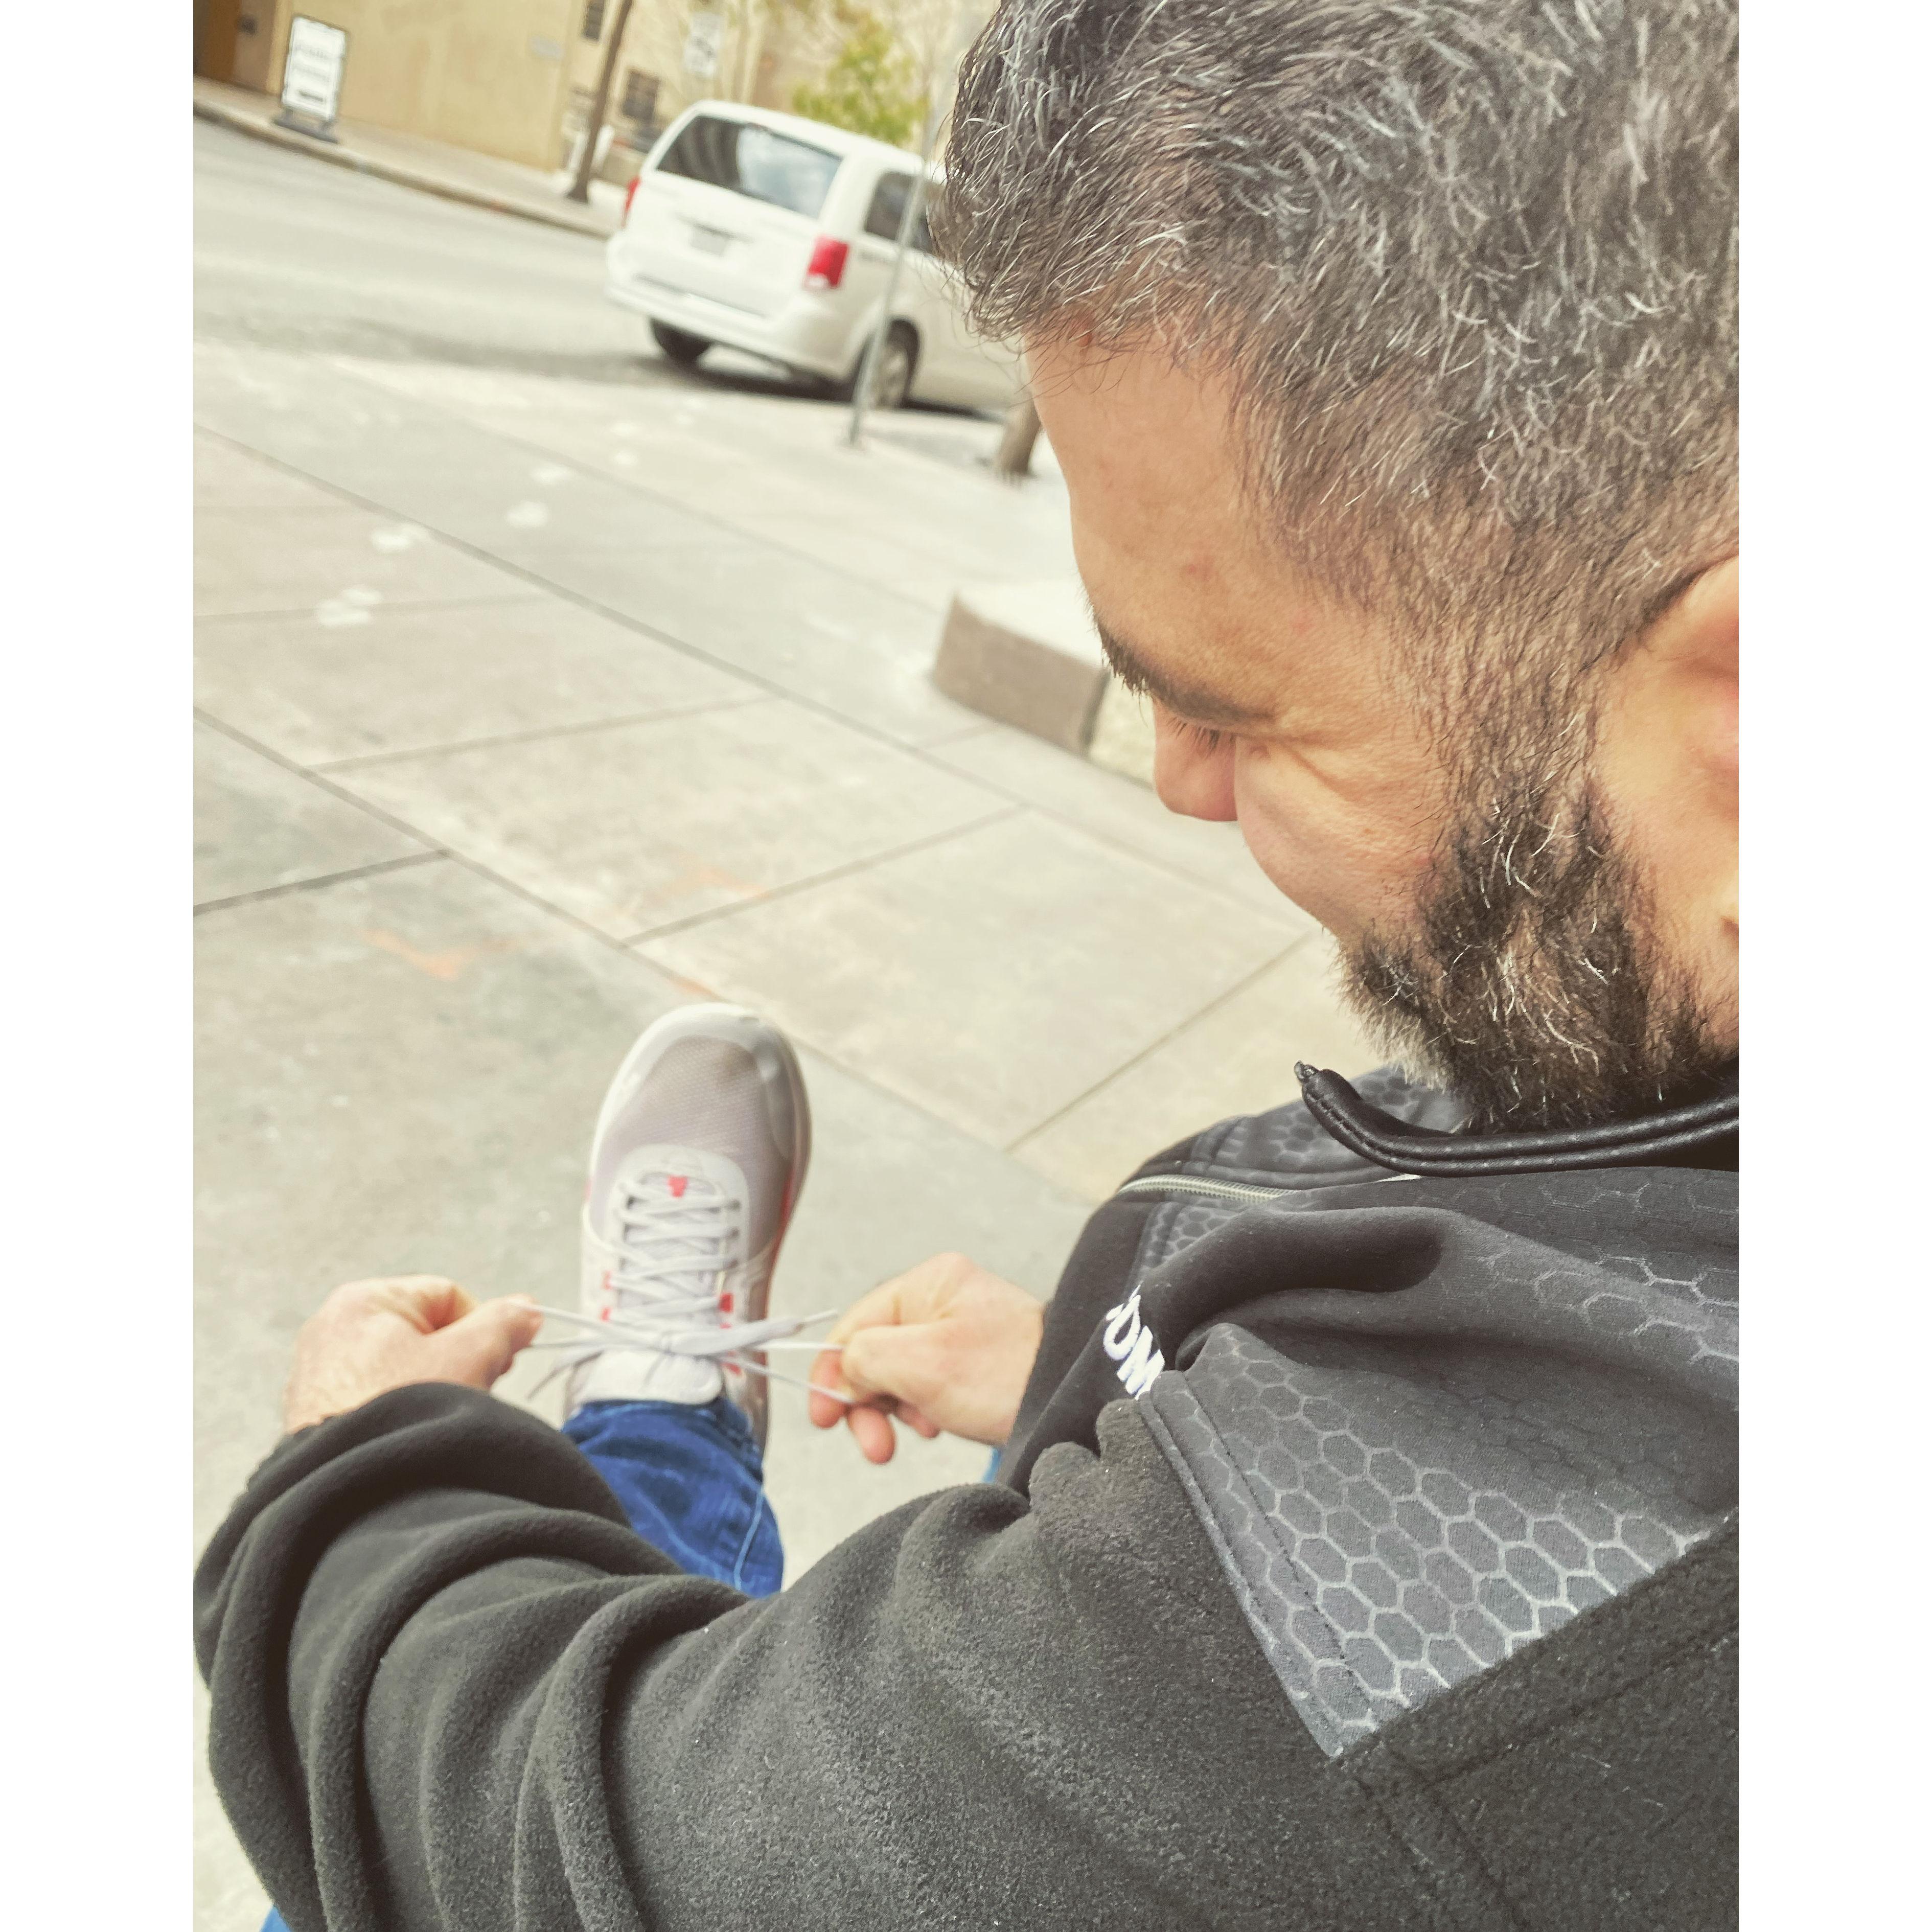 Carlos tying my shoe...true love.